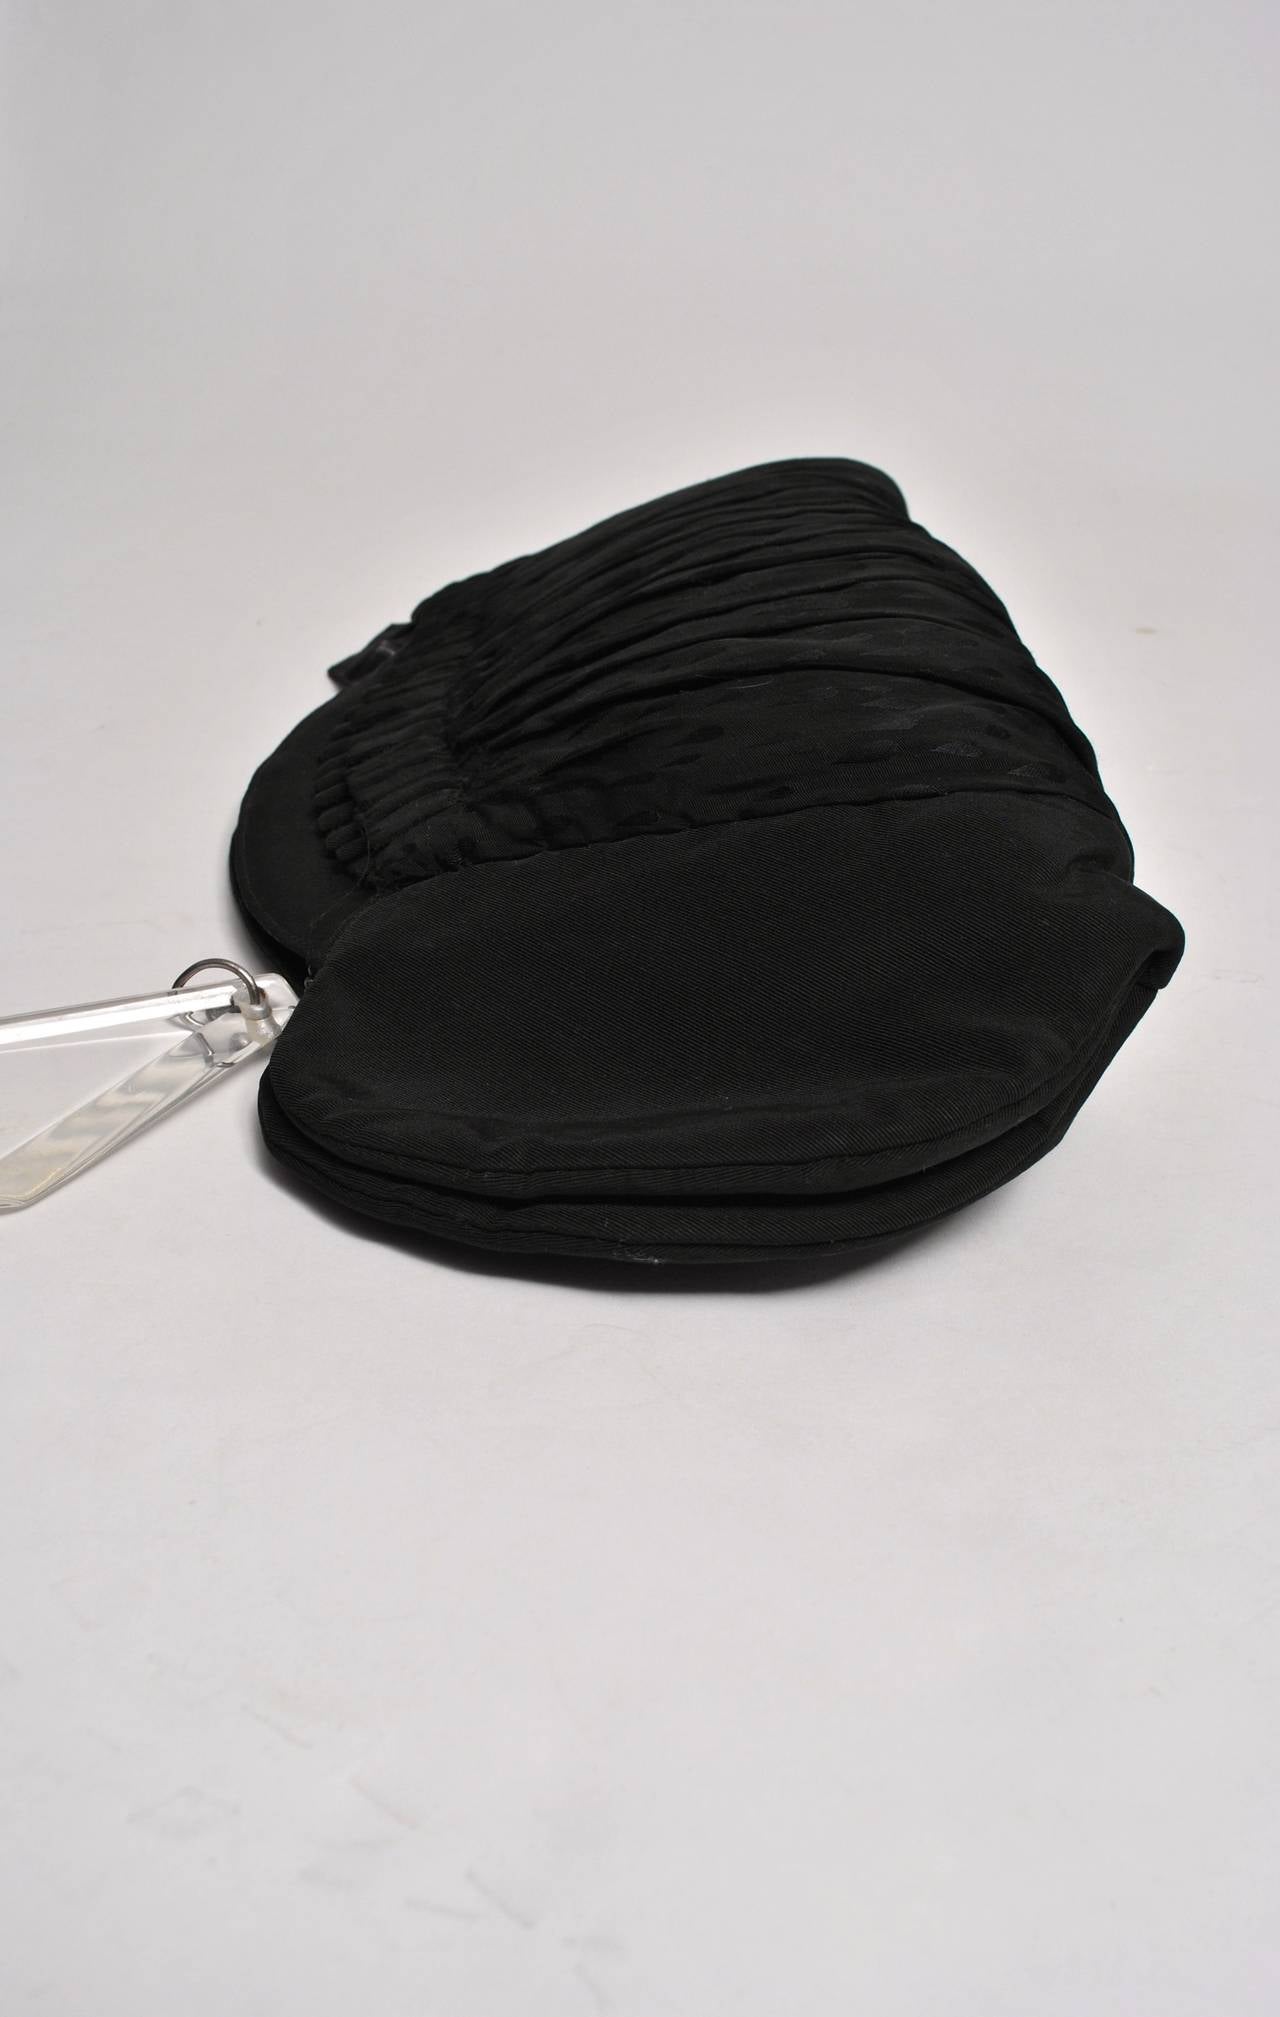 D'un design unique datant des années 1940, cette pochette surdimensionnée en faille noire présente un dessus et des côtés incurvés ainsi qu'une section centrale de tissu à motif noir sur noir qui s'accorde avec la garniture des gants. Très